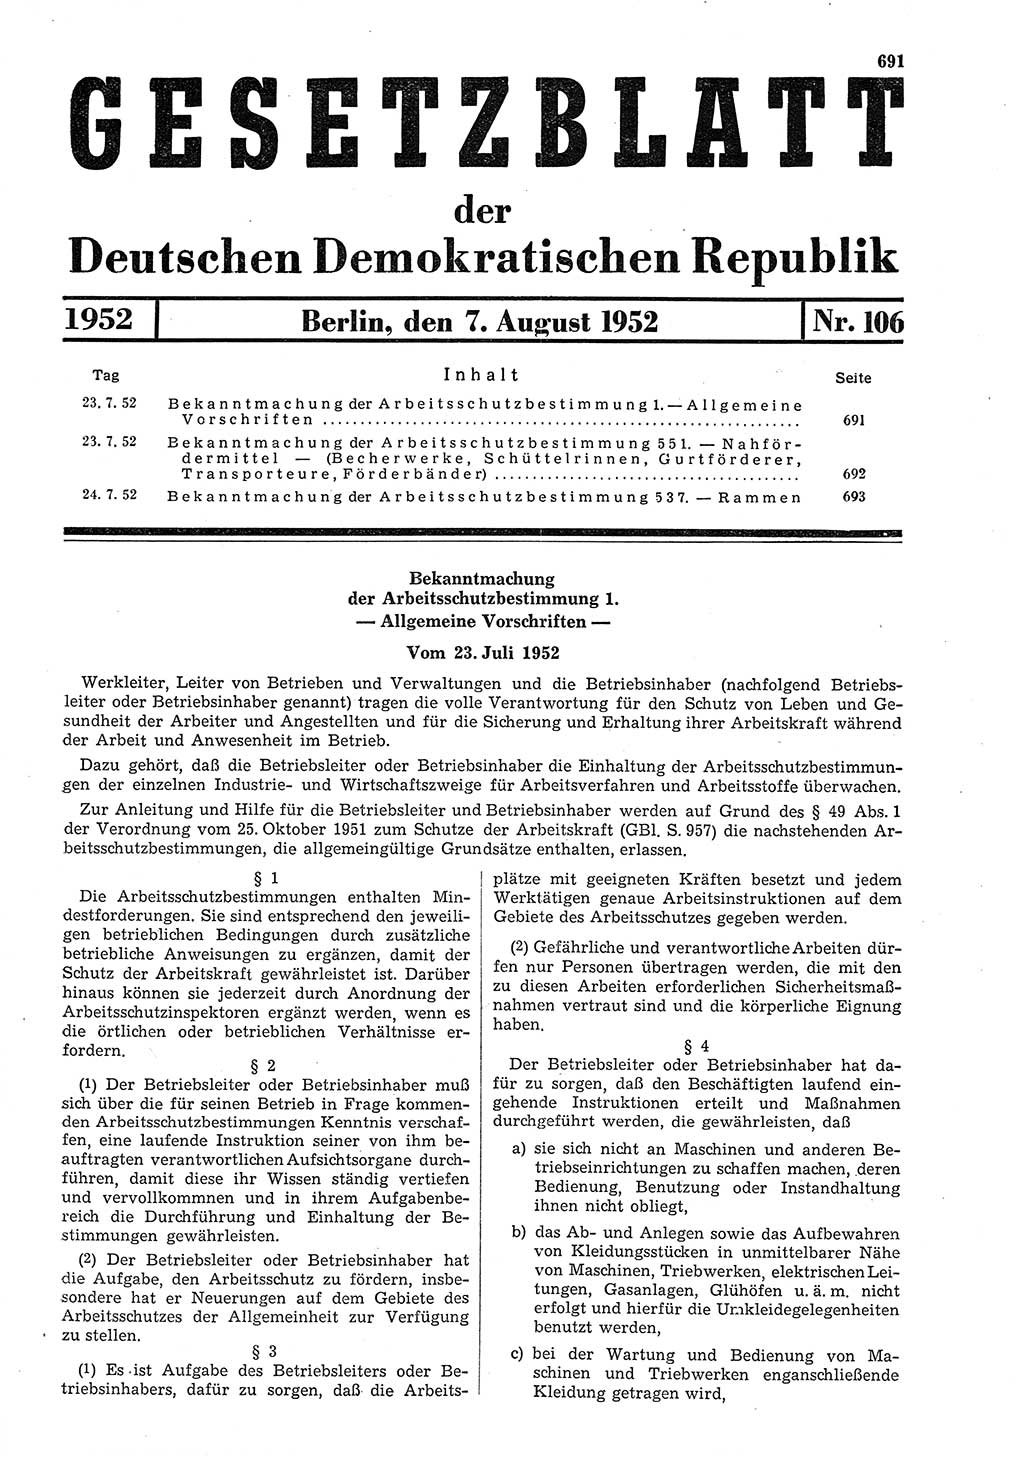 Gesetzblatt (GBl.) der Deutschen Demokratischen Republik (DDR) 1952, Seite 691 (GBl. DDR 1952, S. 691)